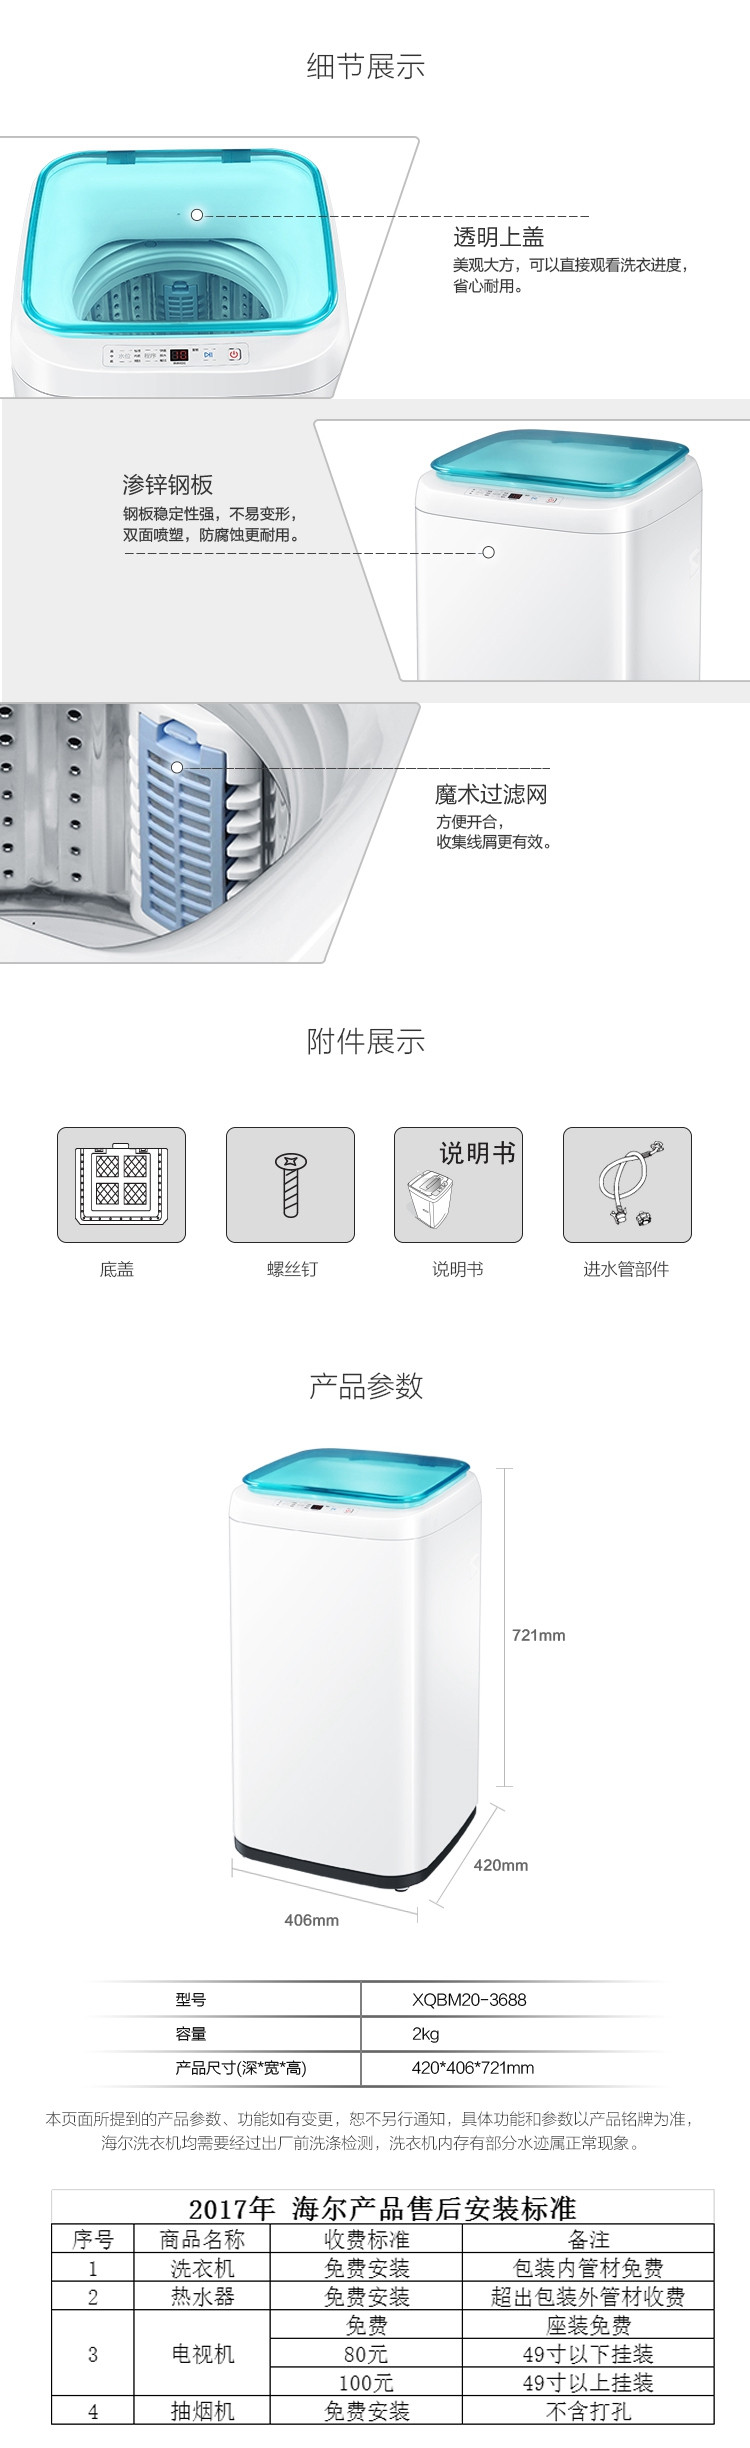 海尔洗衣机XQBM20-3688全自动瓷白顶开门迷你波轮洗衣机2KG容量